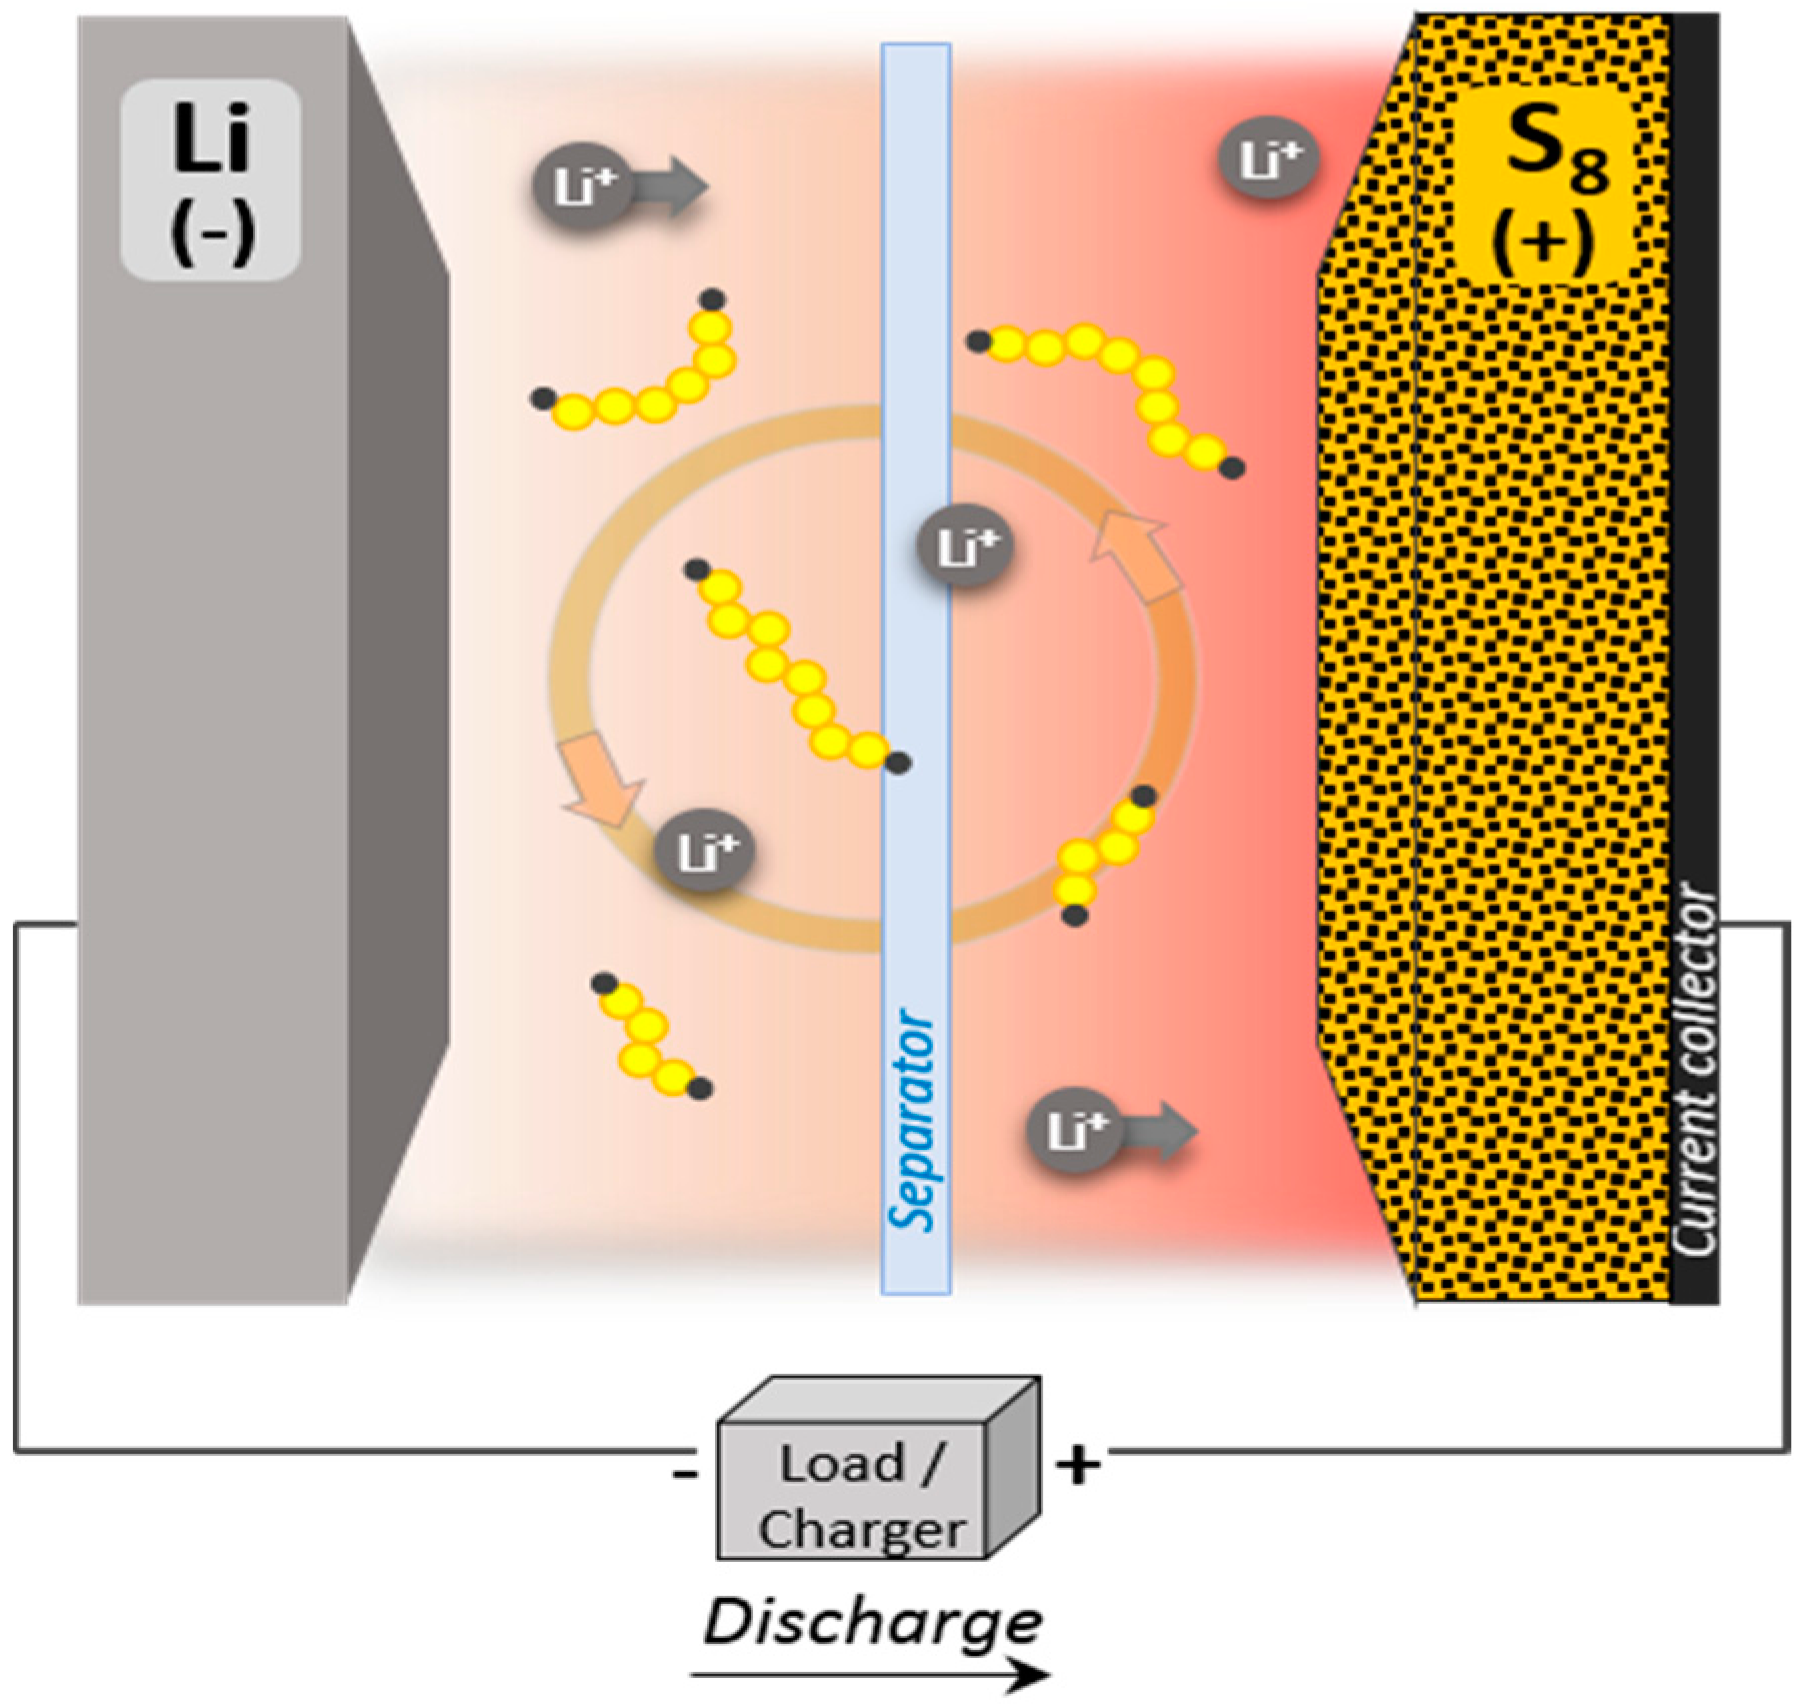 Lithium-sulfur batteries